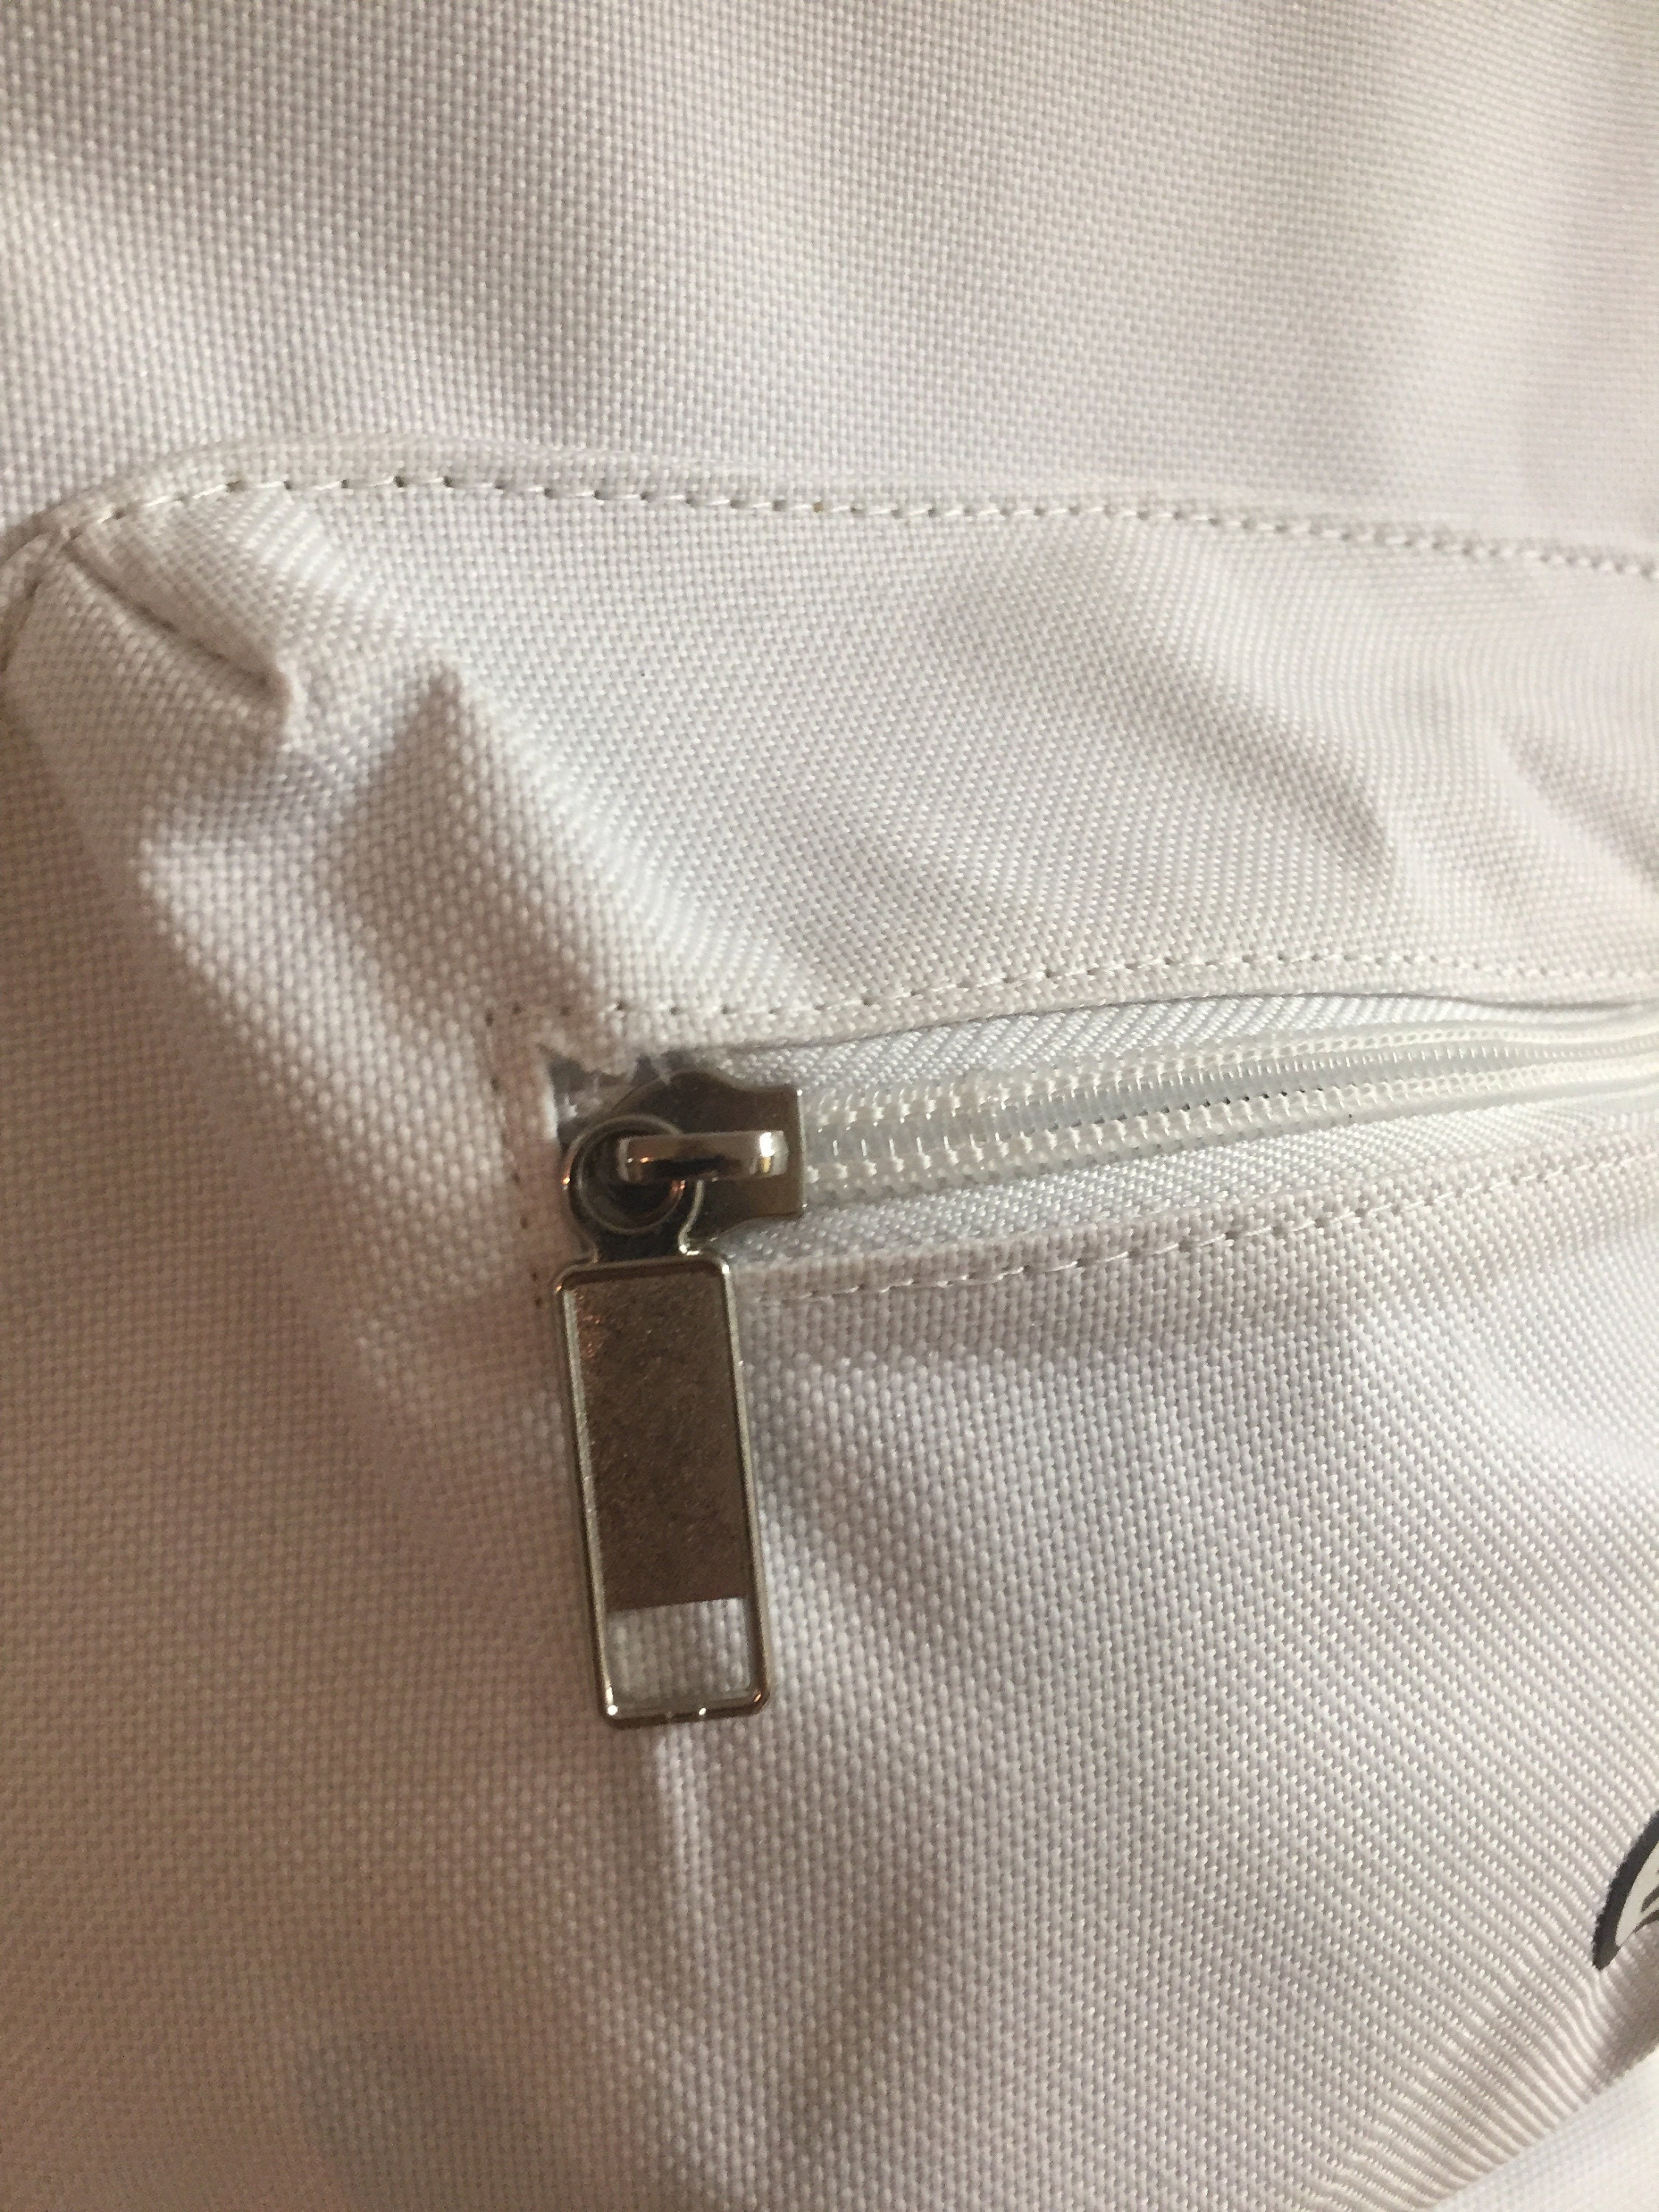 French Vintage Bag Tennis Style Bag Insulator Bag Shoulder Bag - Etsy